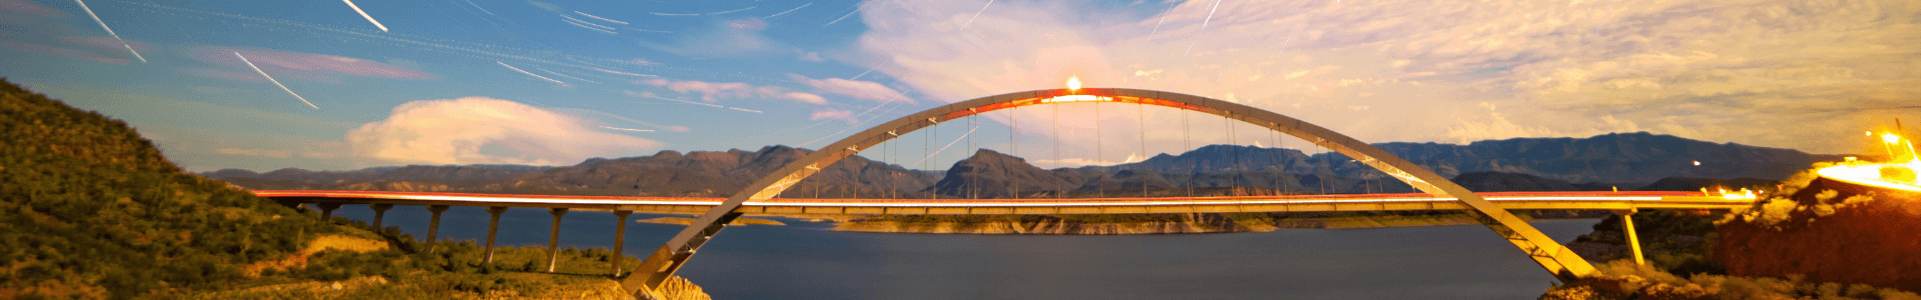 bridge in phoenix Arizona